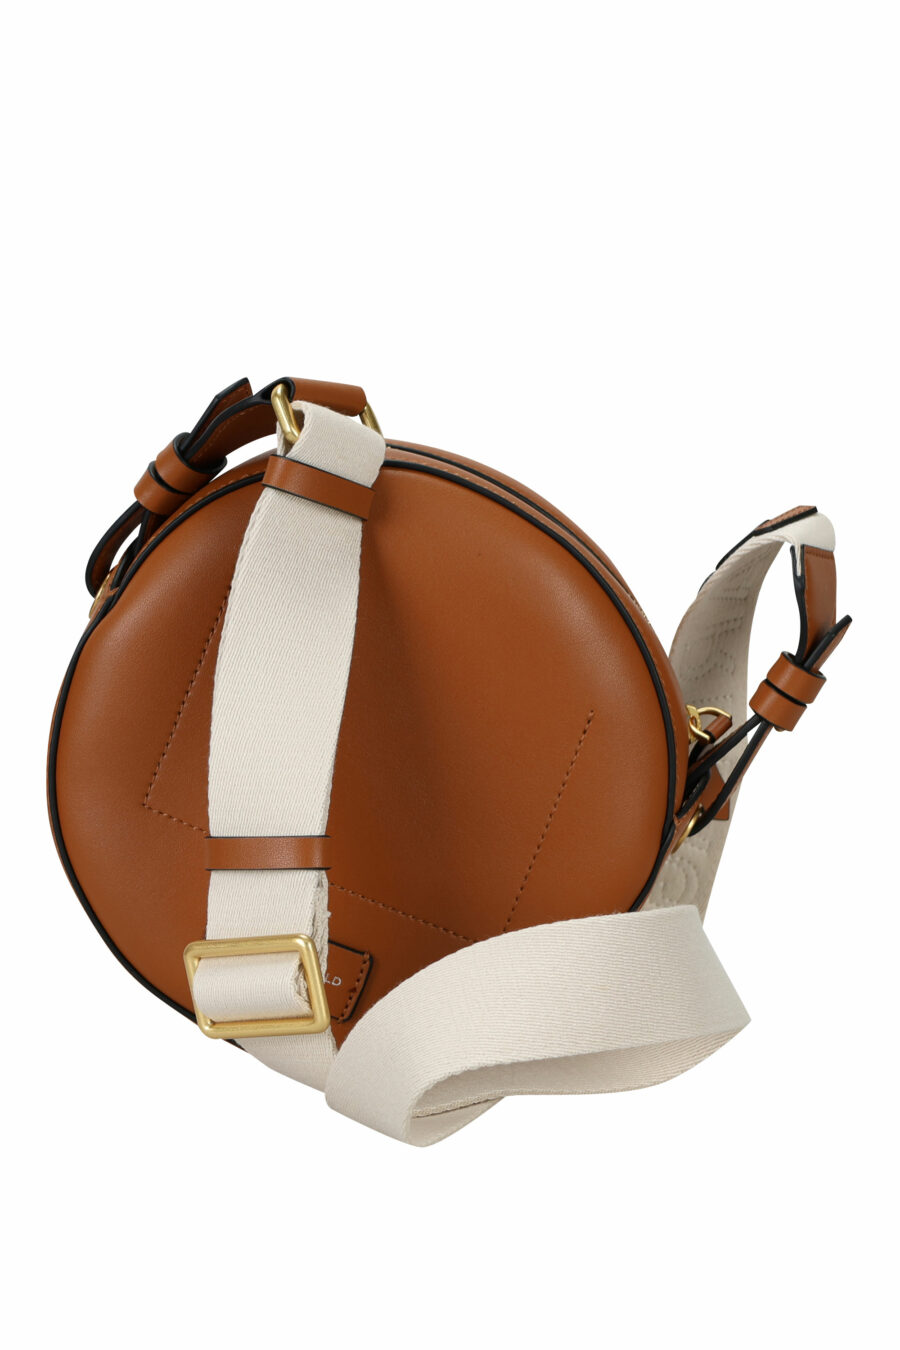 Tote bag mini marrón circular con maxilogo perforado - 8720744234746 2